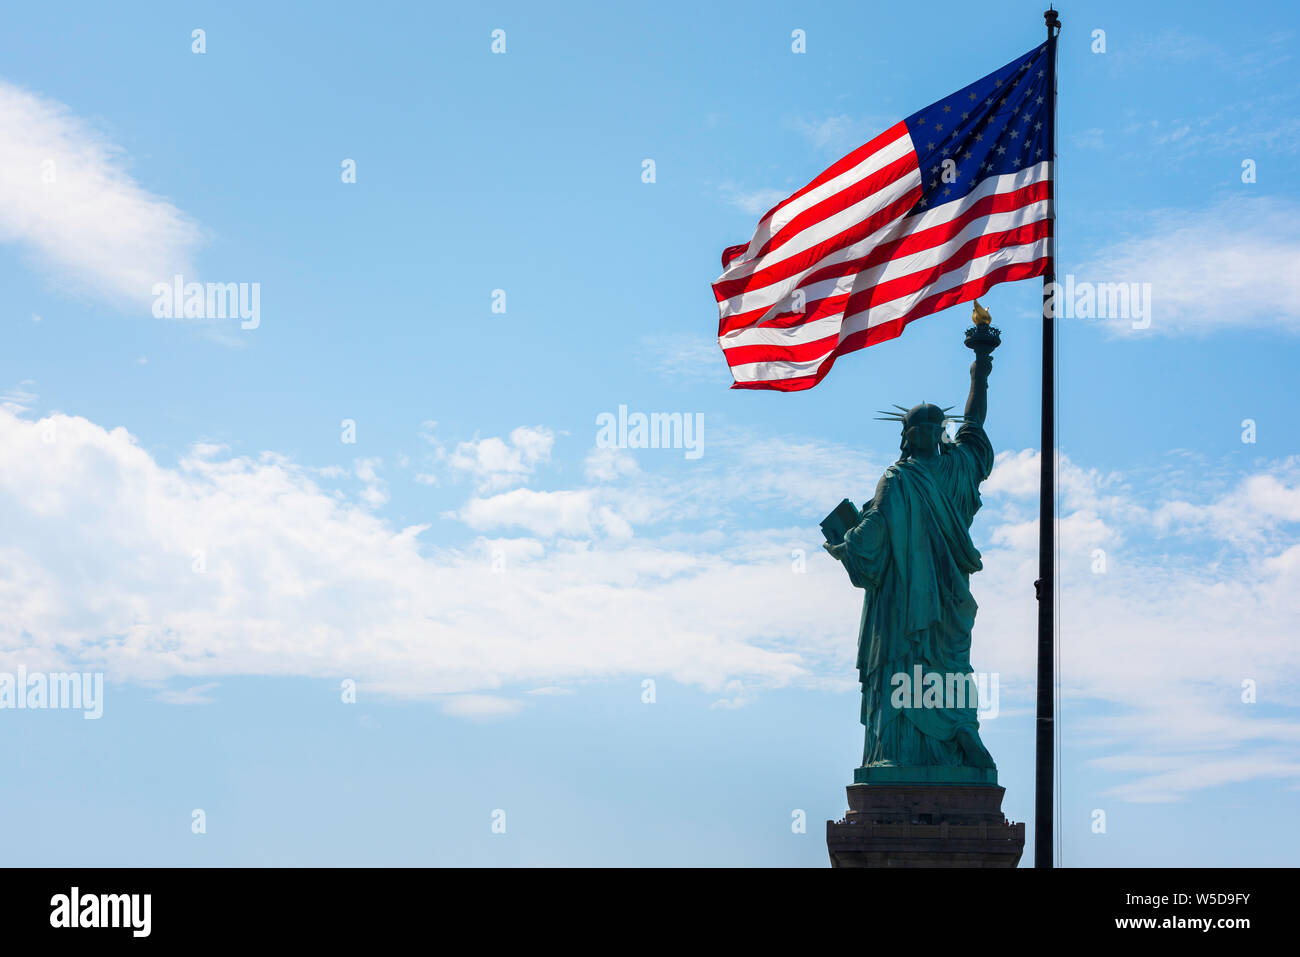 Immagine del concetto di libertà, vista sul retro della Statua della libertà e una bandiera con stelle e strisce illuminate sul retro con spazio di copia situato a sinistra, New York City, USA. Foto Stock